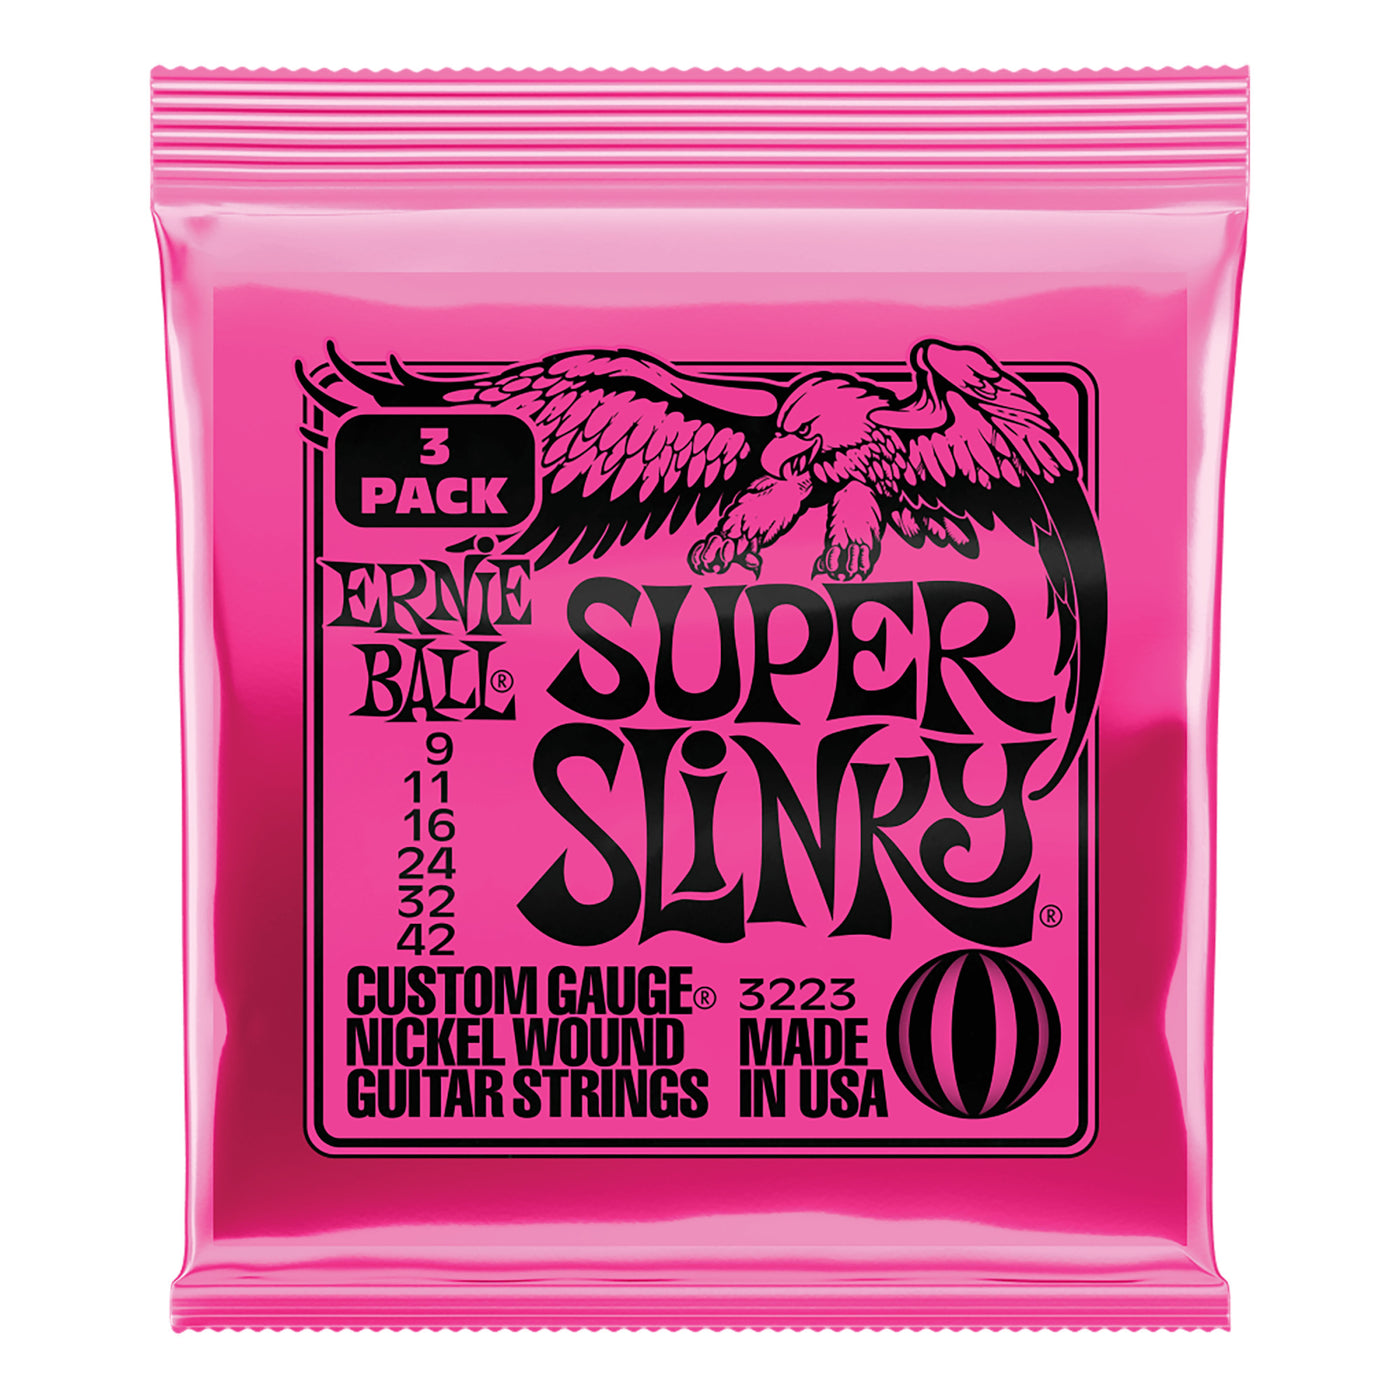 Ernie Ball Super Slinky Nickel Wound Electric Guitar Strings 3 Pack of 6 Strings Each - 9-42 Gauge